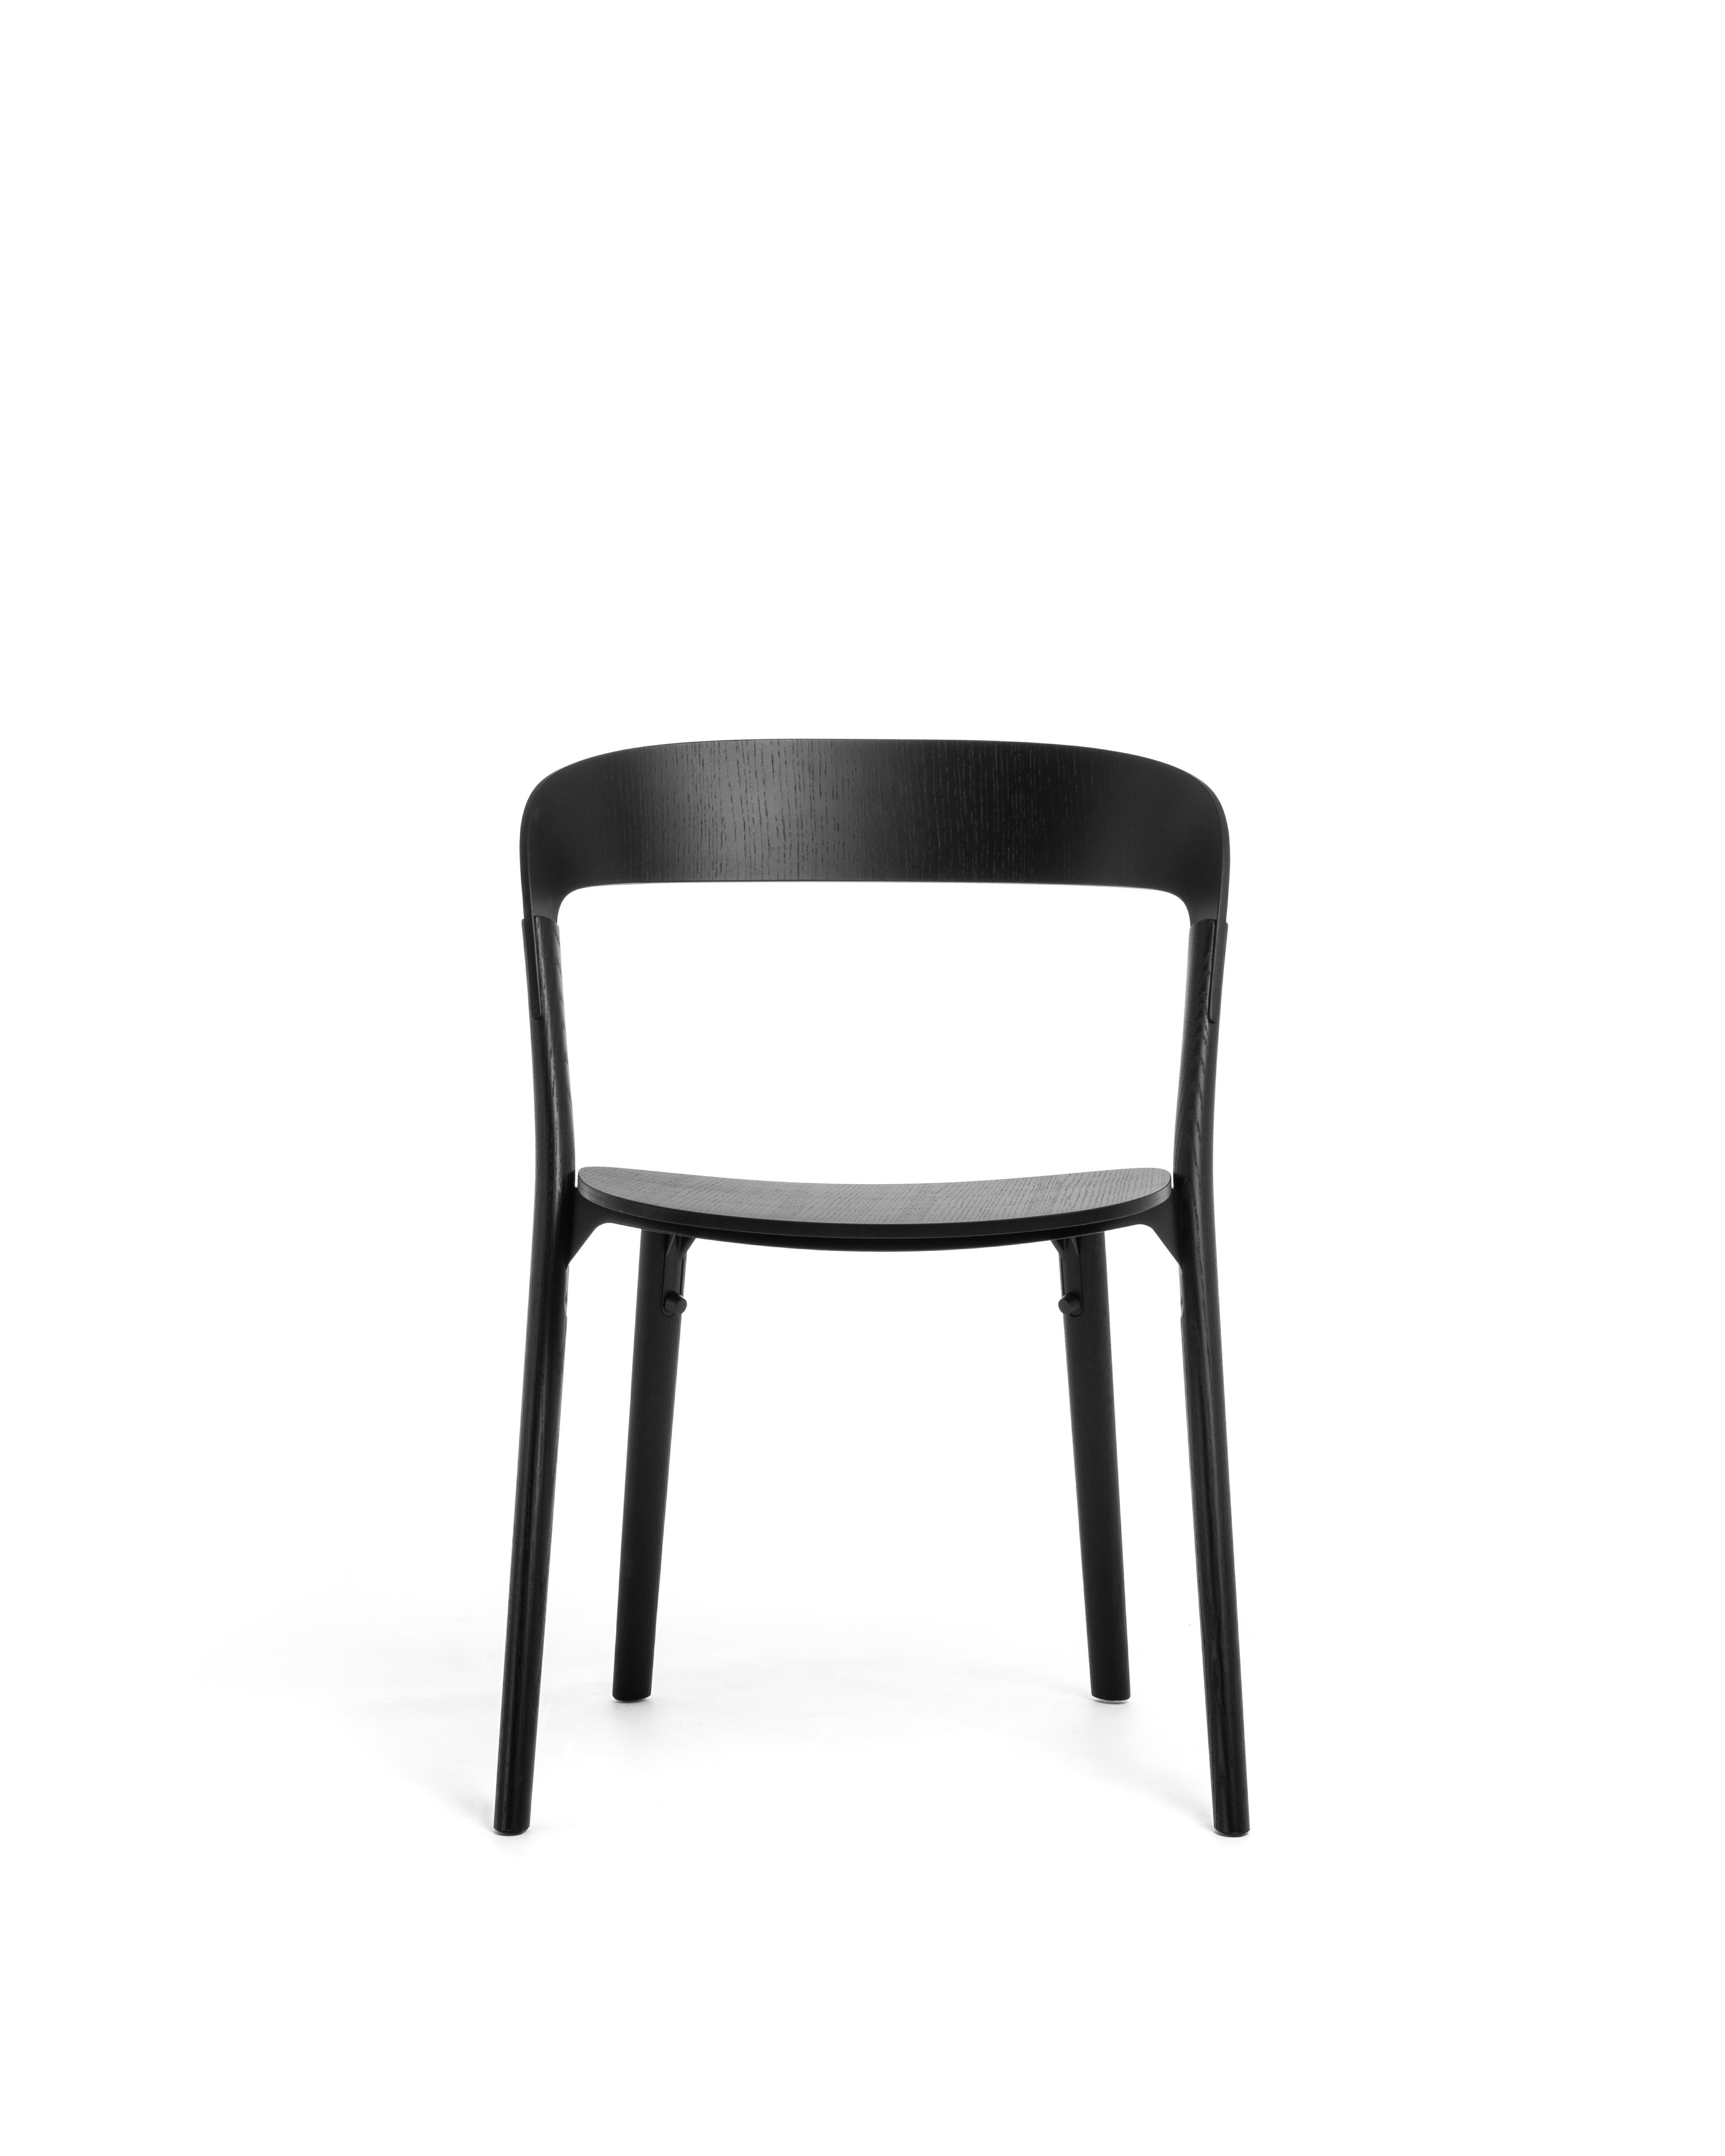 Minimalismus und Essenz sind die Schlüsselwörter, die Ronan & Erwan Bouroullec
für das Design von Pila inspiriert wurden. Der Sitz und die Rückenlehne des Pila-Stuhls aus Sperrholz werden von vier sehr dünnen Beinen aus Massivholz getragen, die